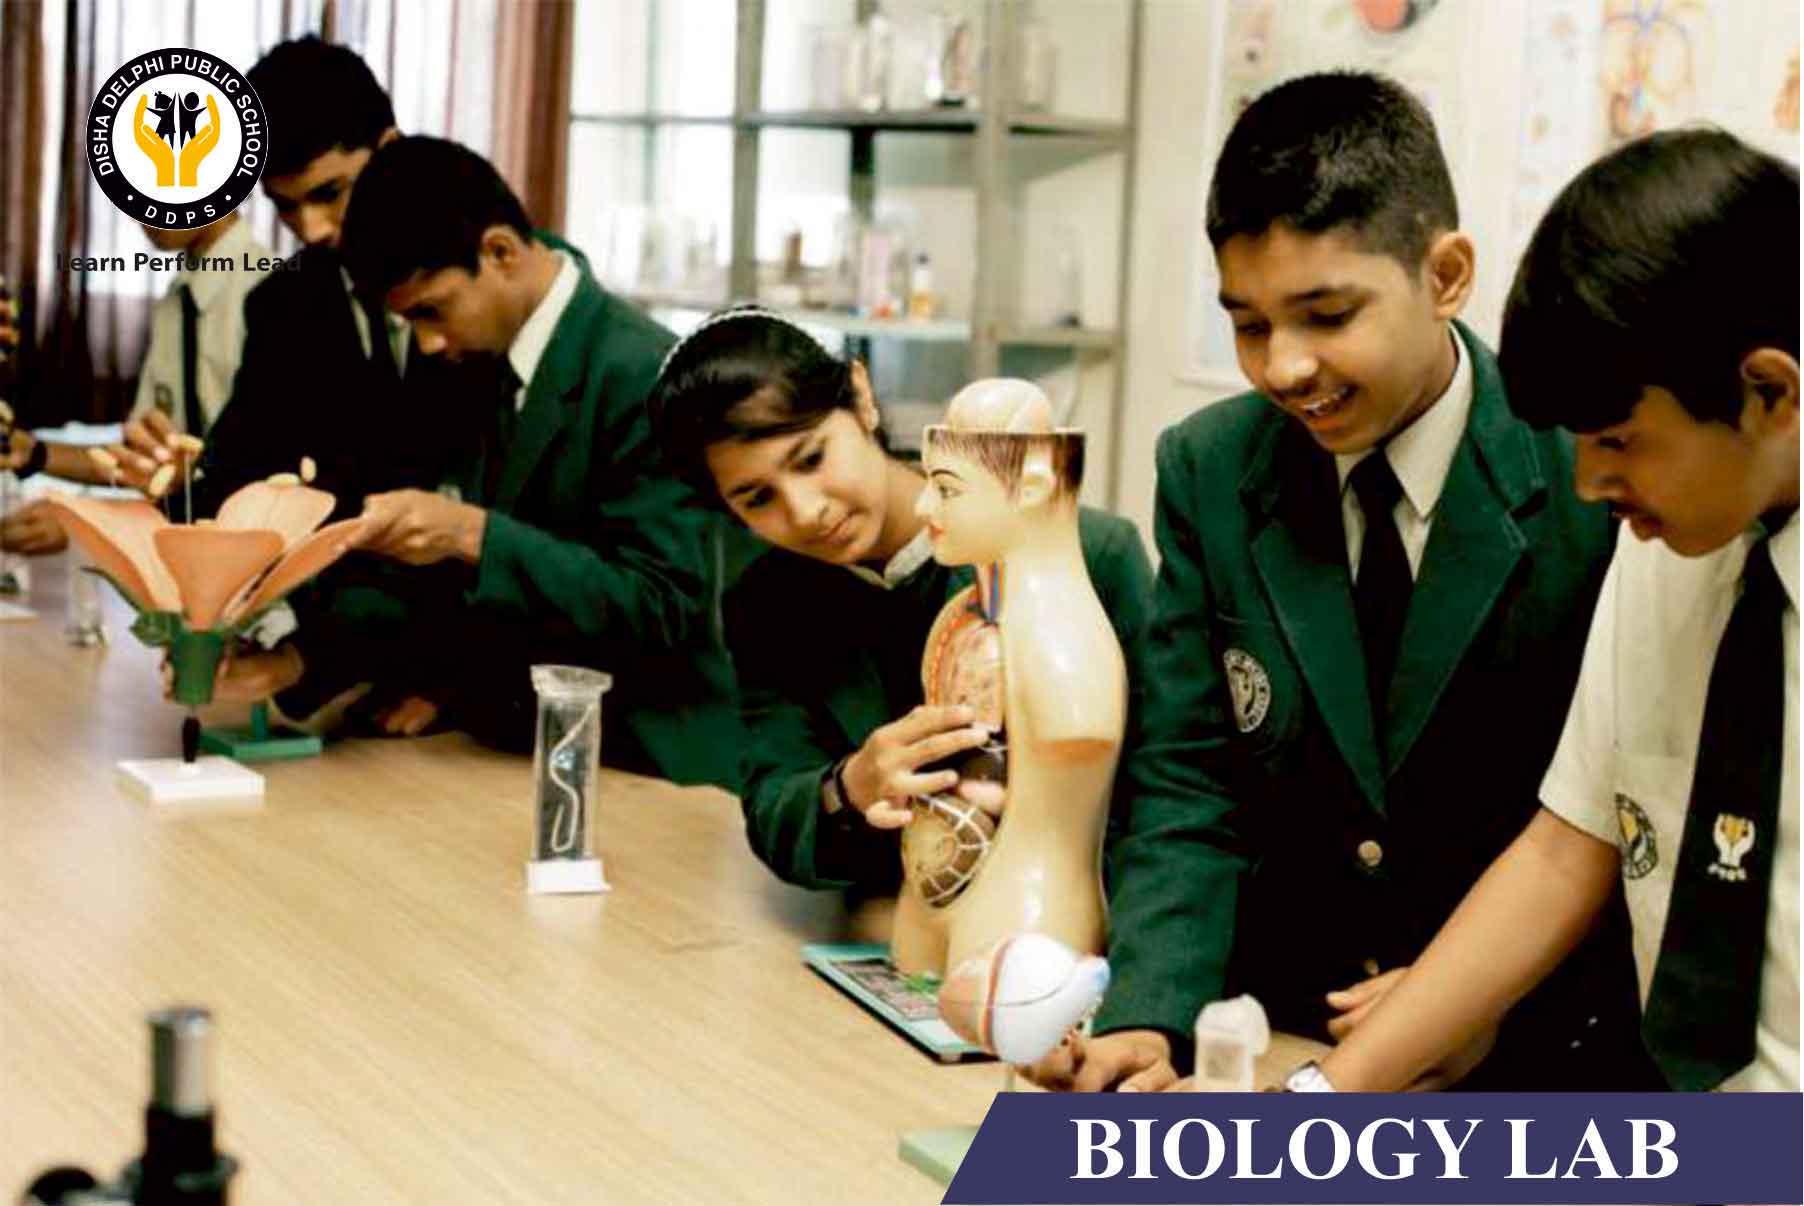 Biology Laboratory